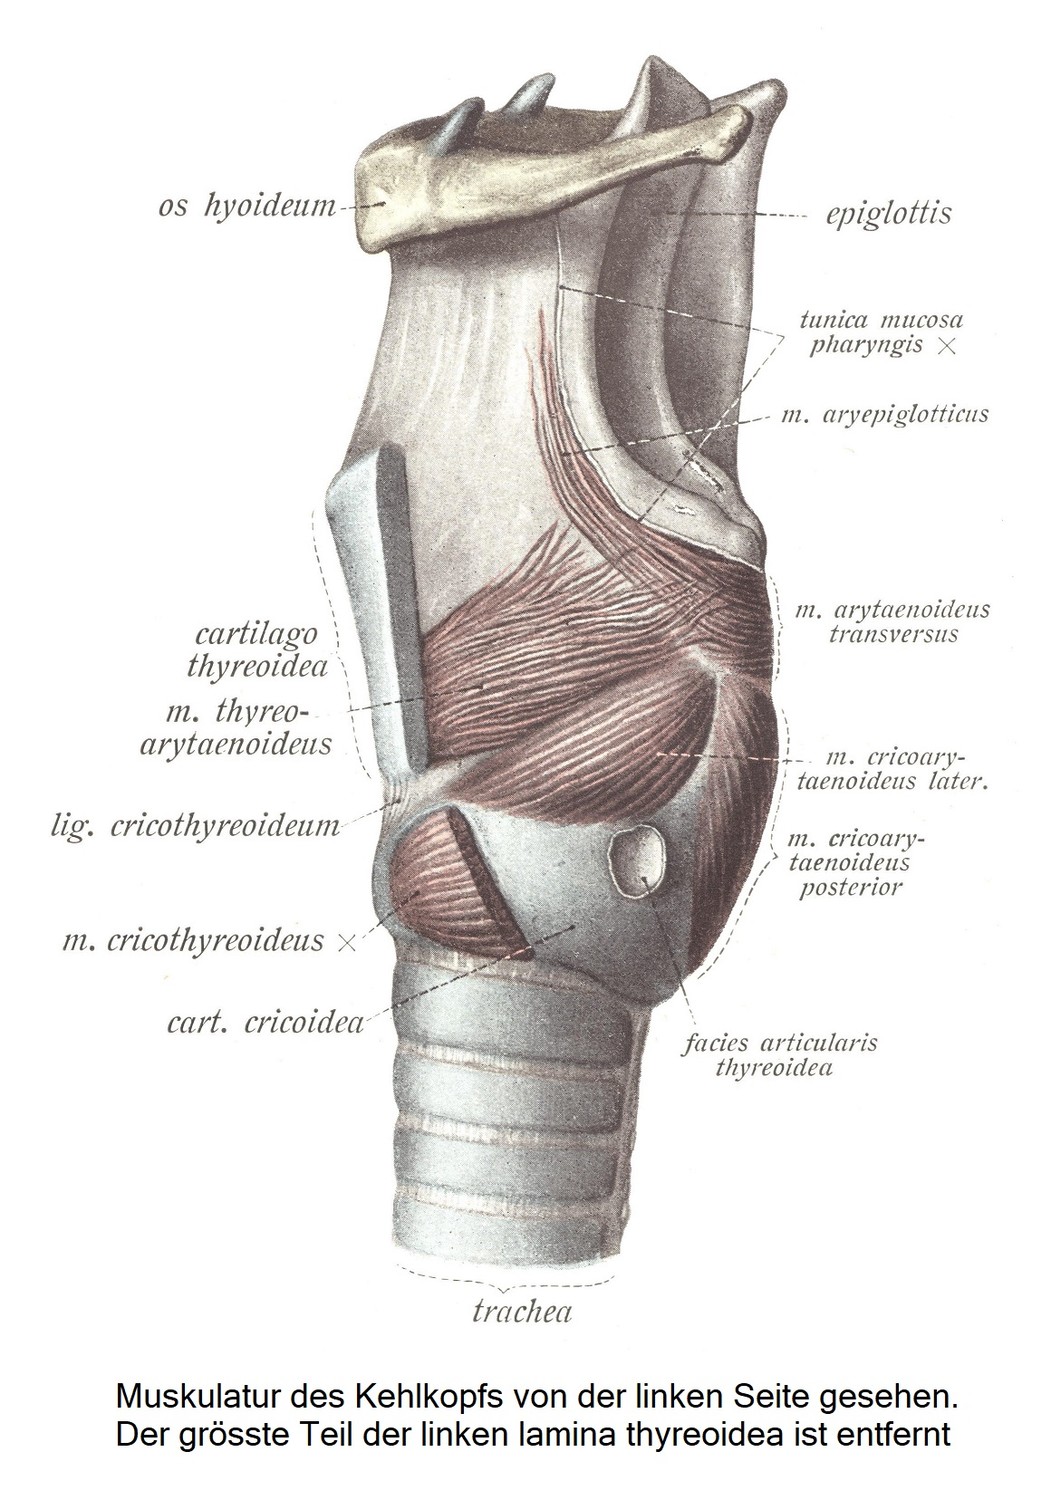 Мускулатура гортани при виде слева. Большая часть левой пластинки щитовидной железы удалена.